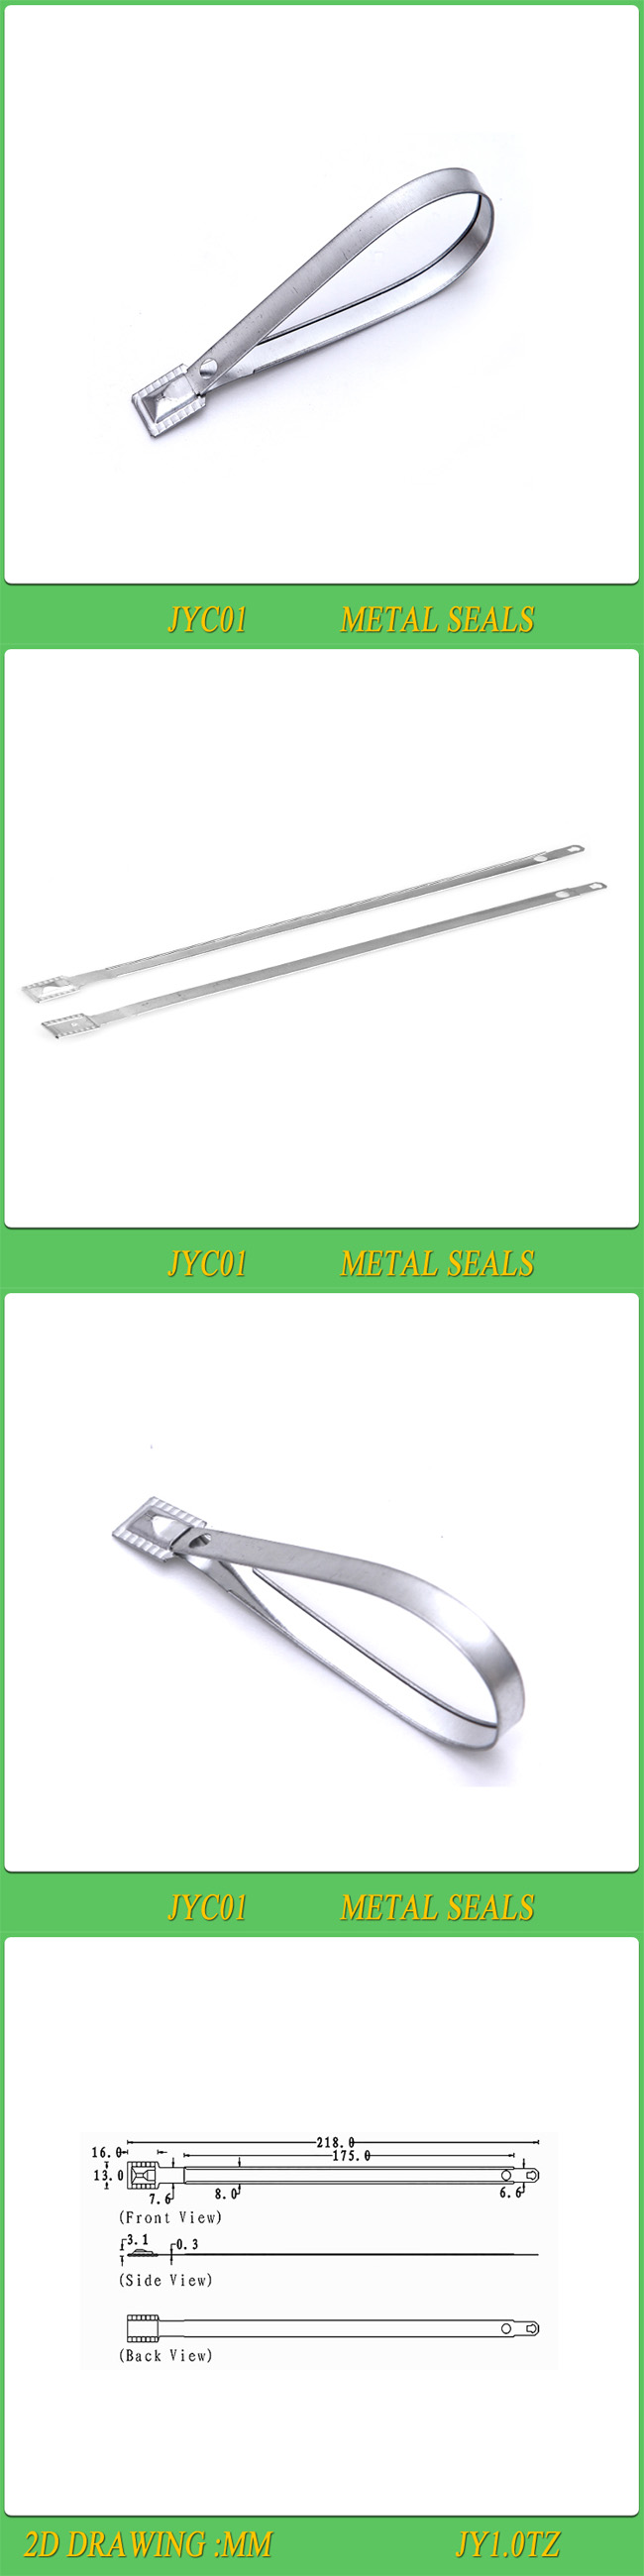 Metal Seals, Metal Locks., High Security Metal Seals (JYC01)